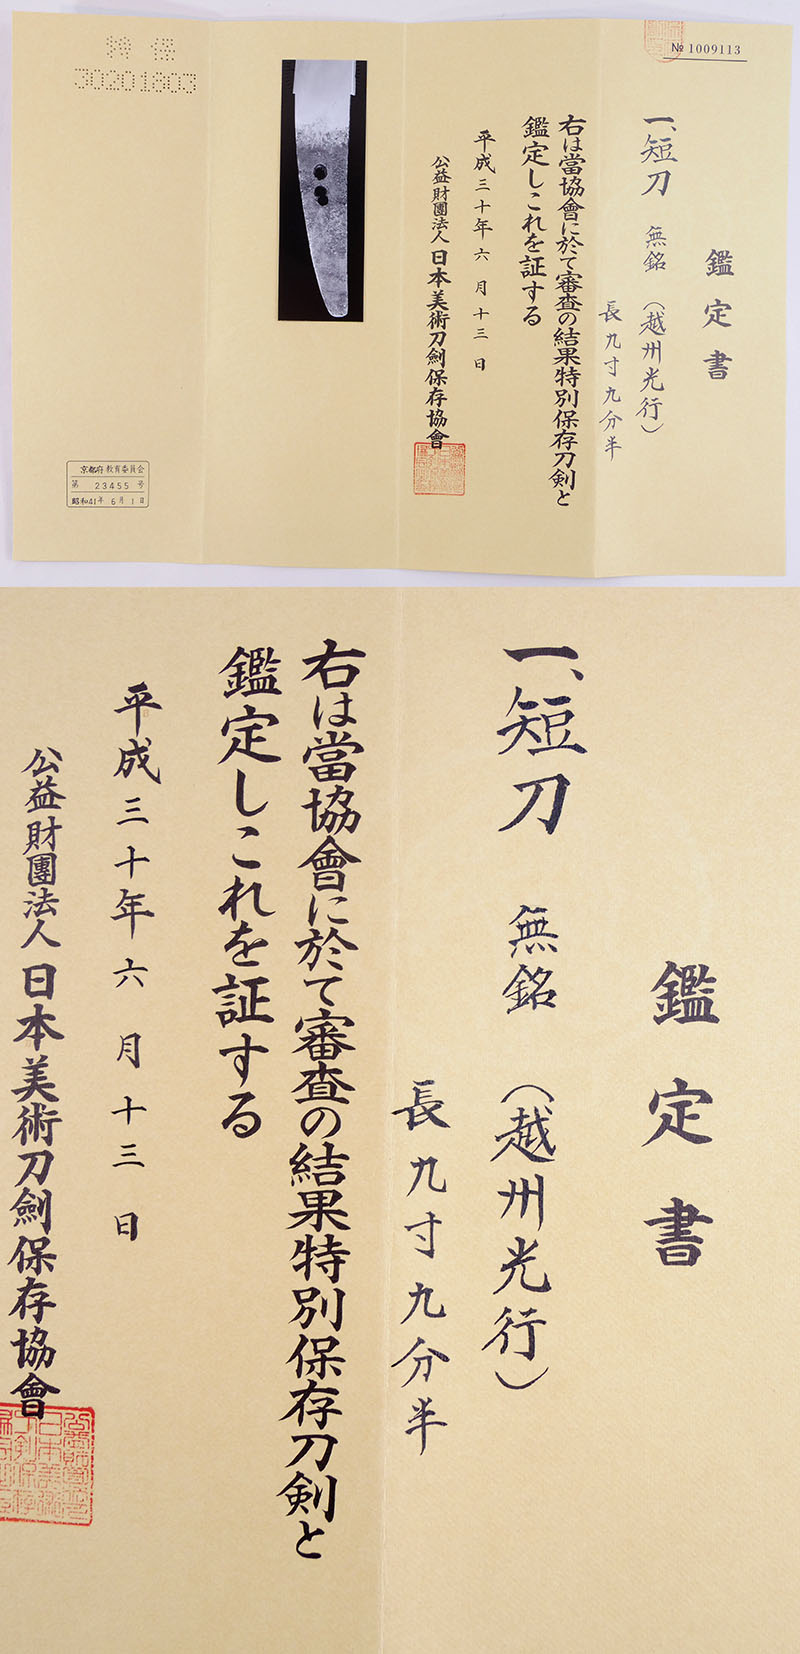 無銘 [越州光行]（越州敦賀住光行） Picture of Certificate